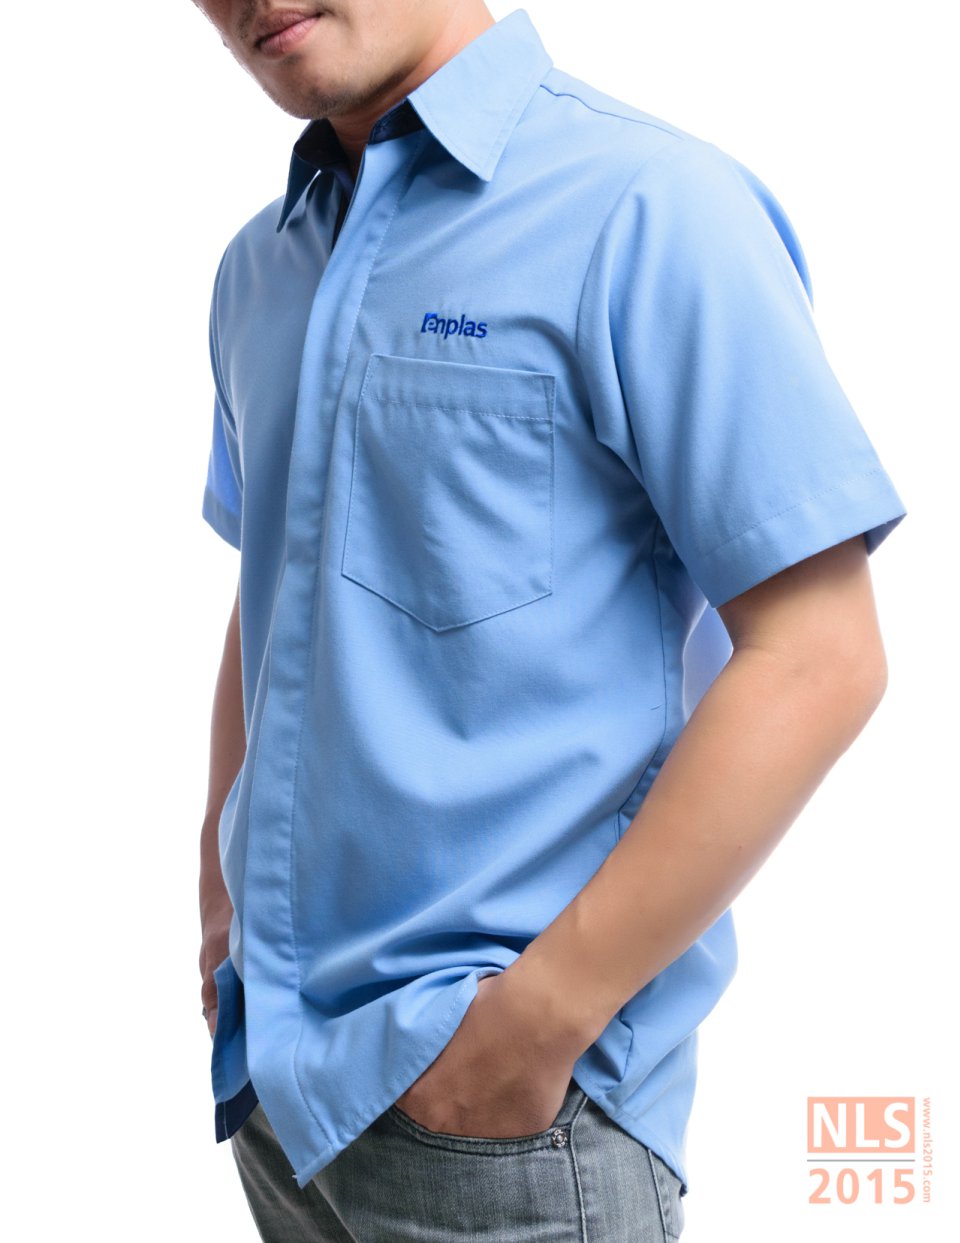 ตัวอย่างชุดยูนิฟอร์มพนักงานบริษ้ท Enplas / โรงงานชุดยูนิฟอร์ม เสื้อโปโลพนักงาน นลินสิริ ศรีราชา ชลบุรีรูปที่ 